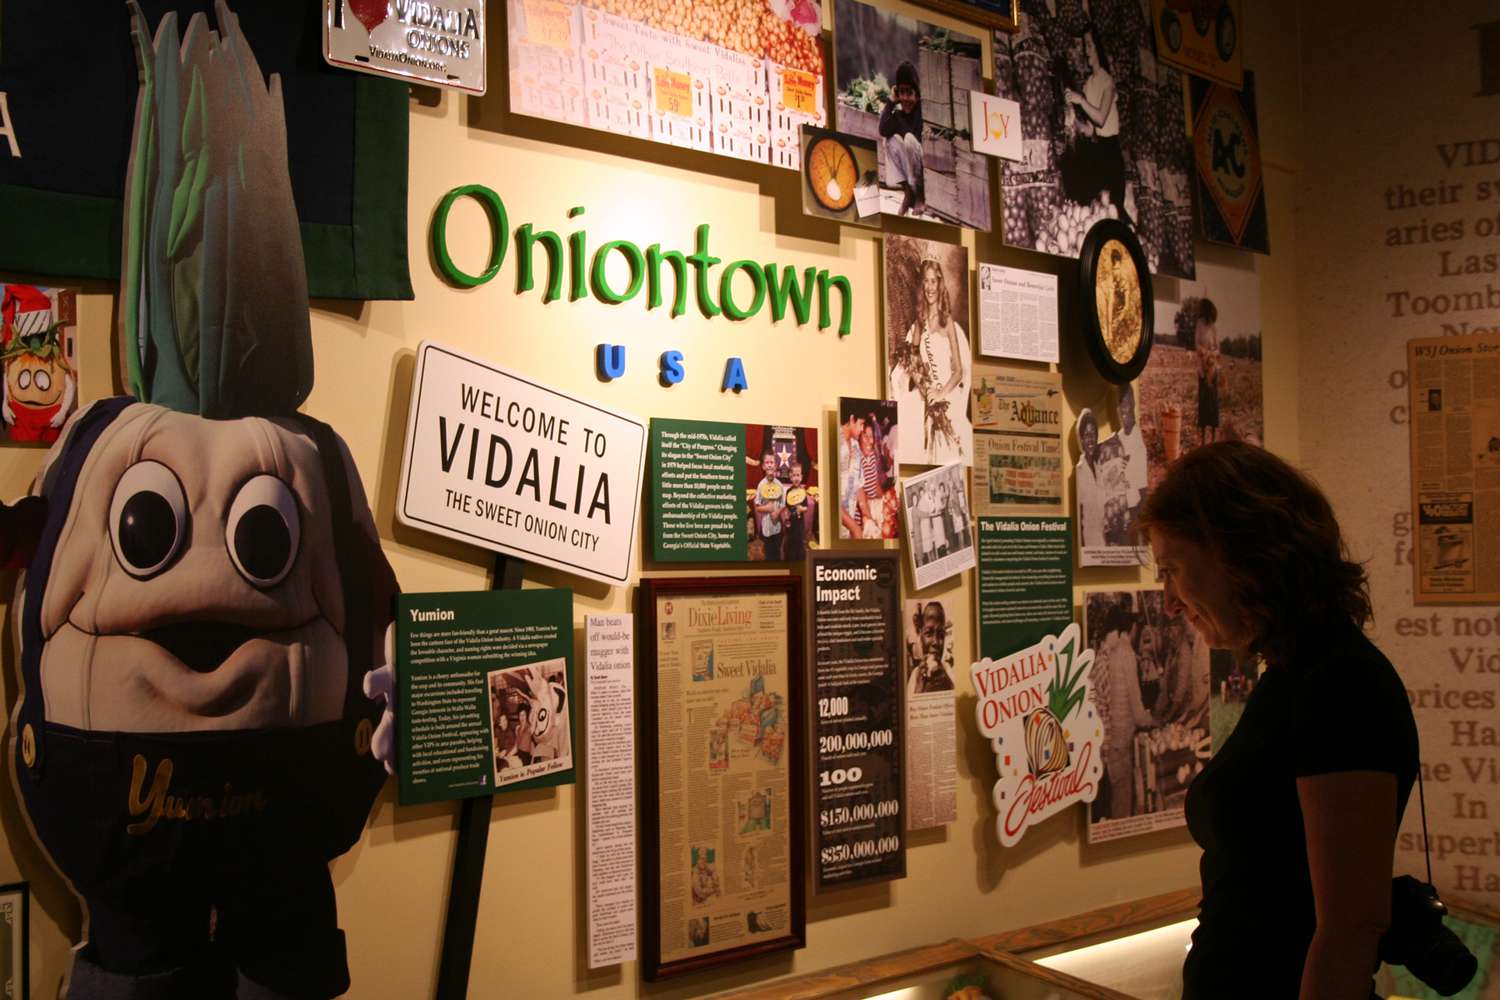 Le musée expose des souvenirs de Vidalia, connue sous le nom de Sweet Onion City et Oniontown USA, et est également connu pour sa mascotte "Yumion".